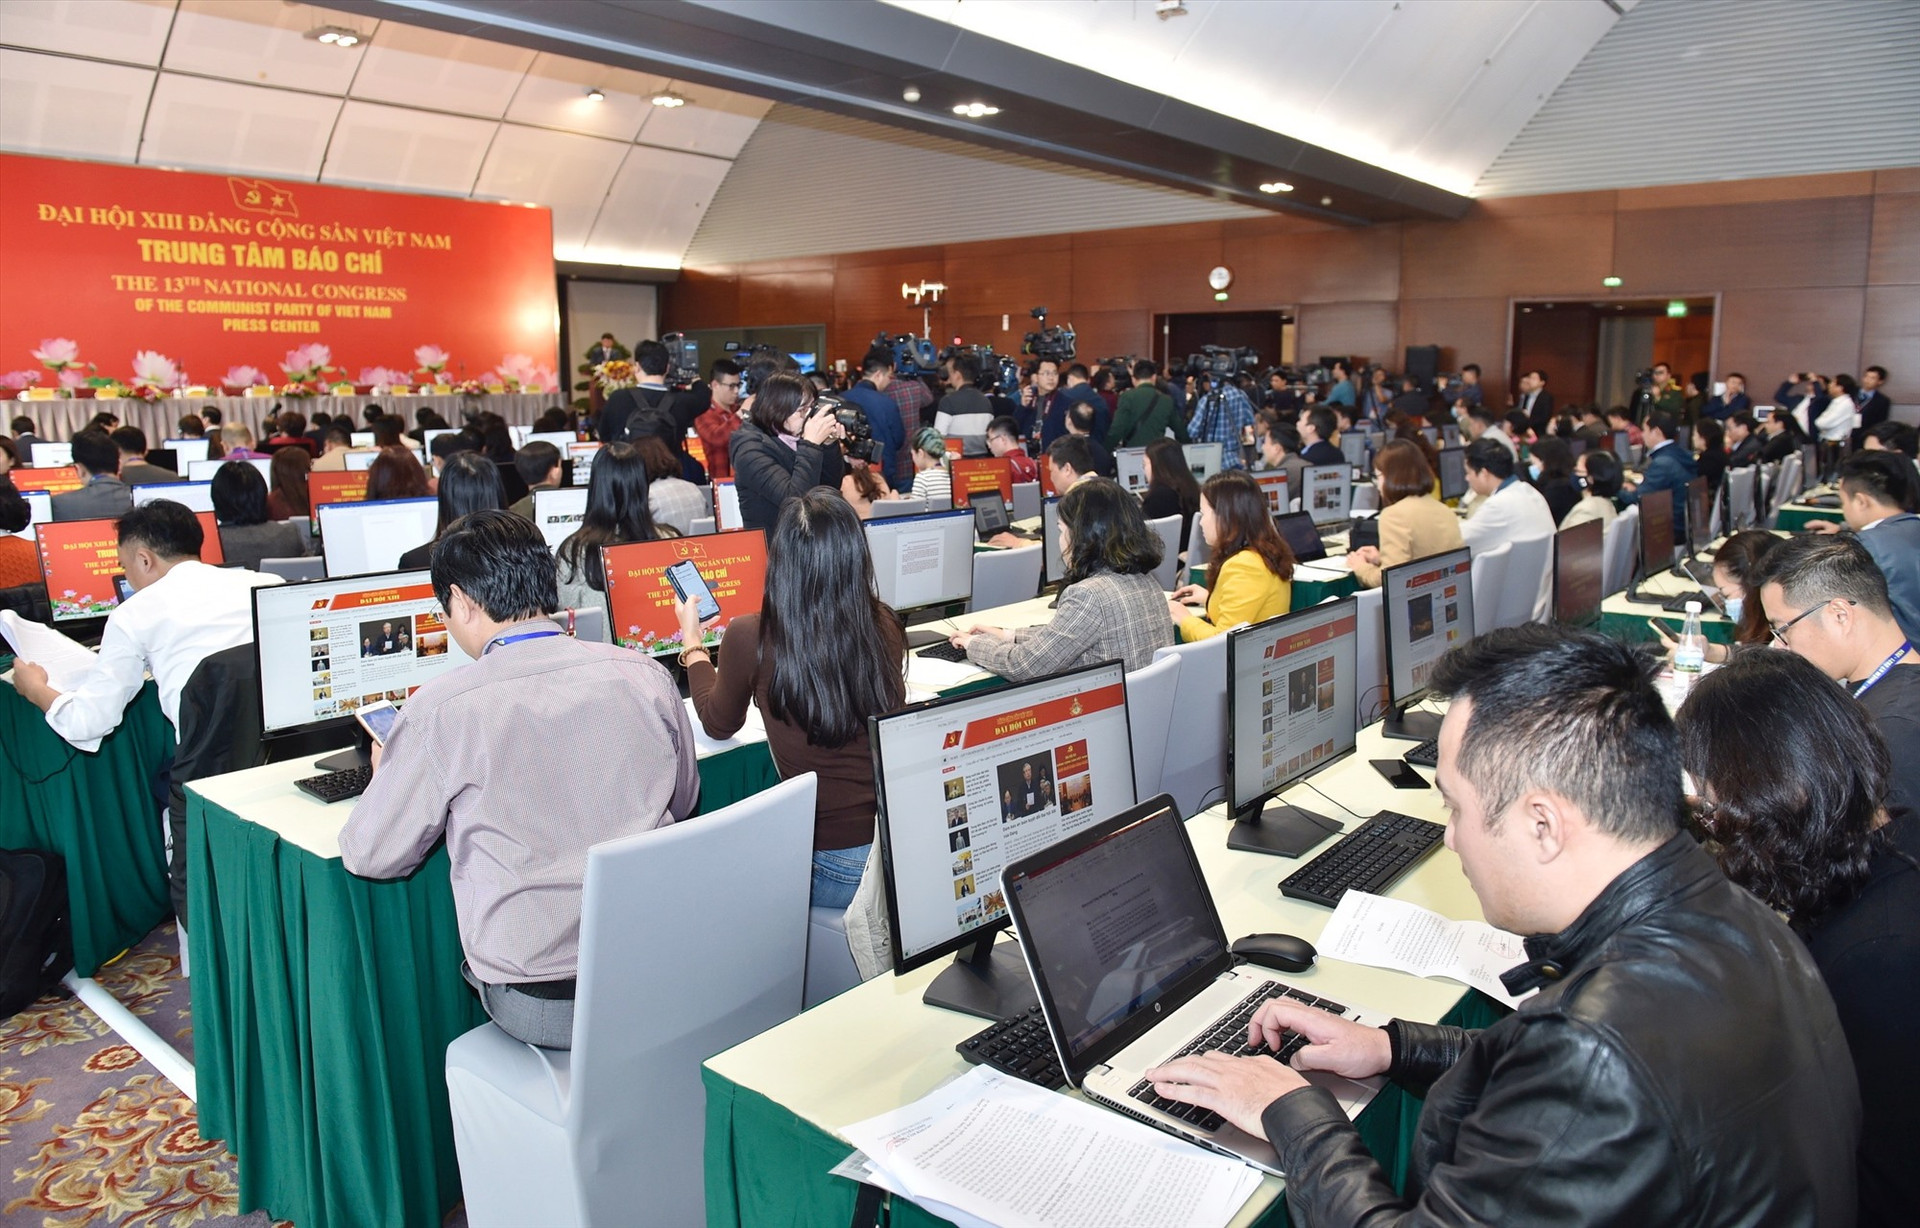 Trung tâm Báo chí trang bị toàn bộ máy tính để bàn có kết nối mạng để phục vụ và đáp ứng yêu cầu tác nghiệp của phóng viên trong nước và quốc tế. Ảnh: VGP/Nhật Bắc